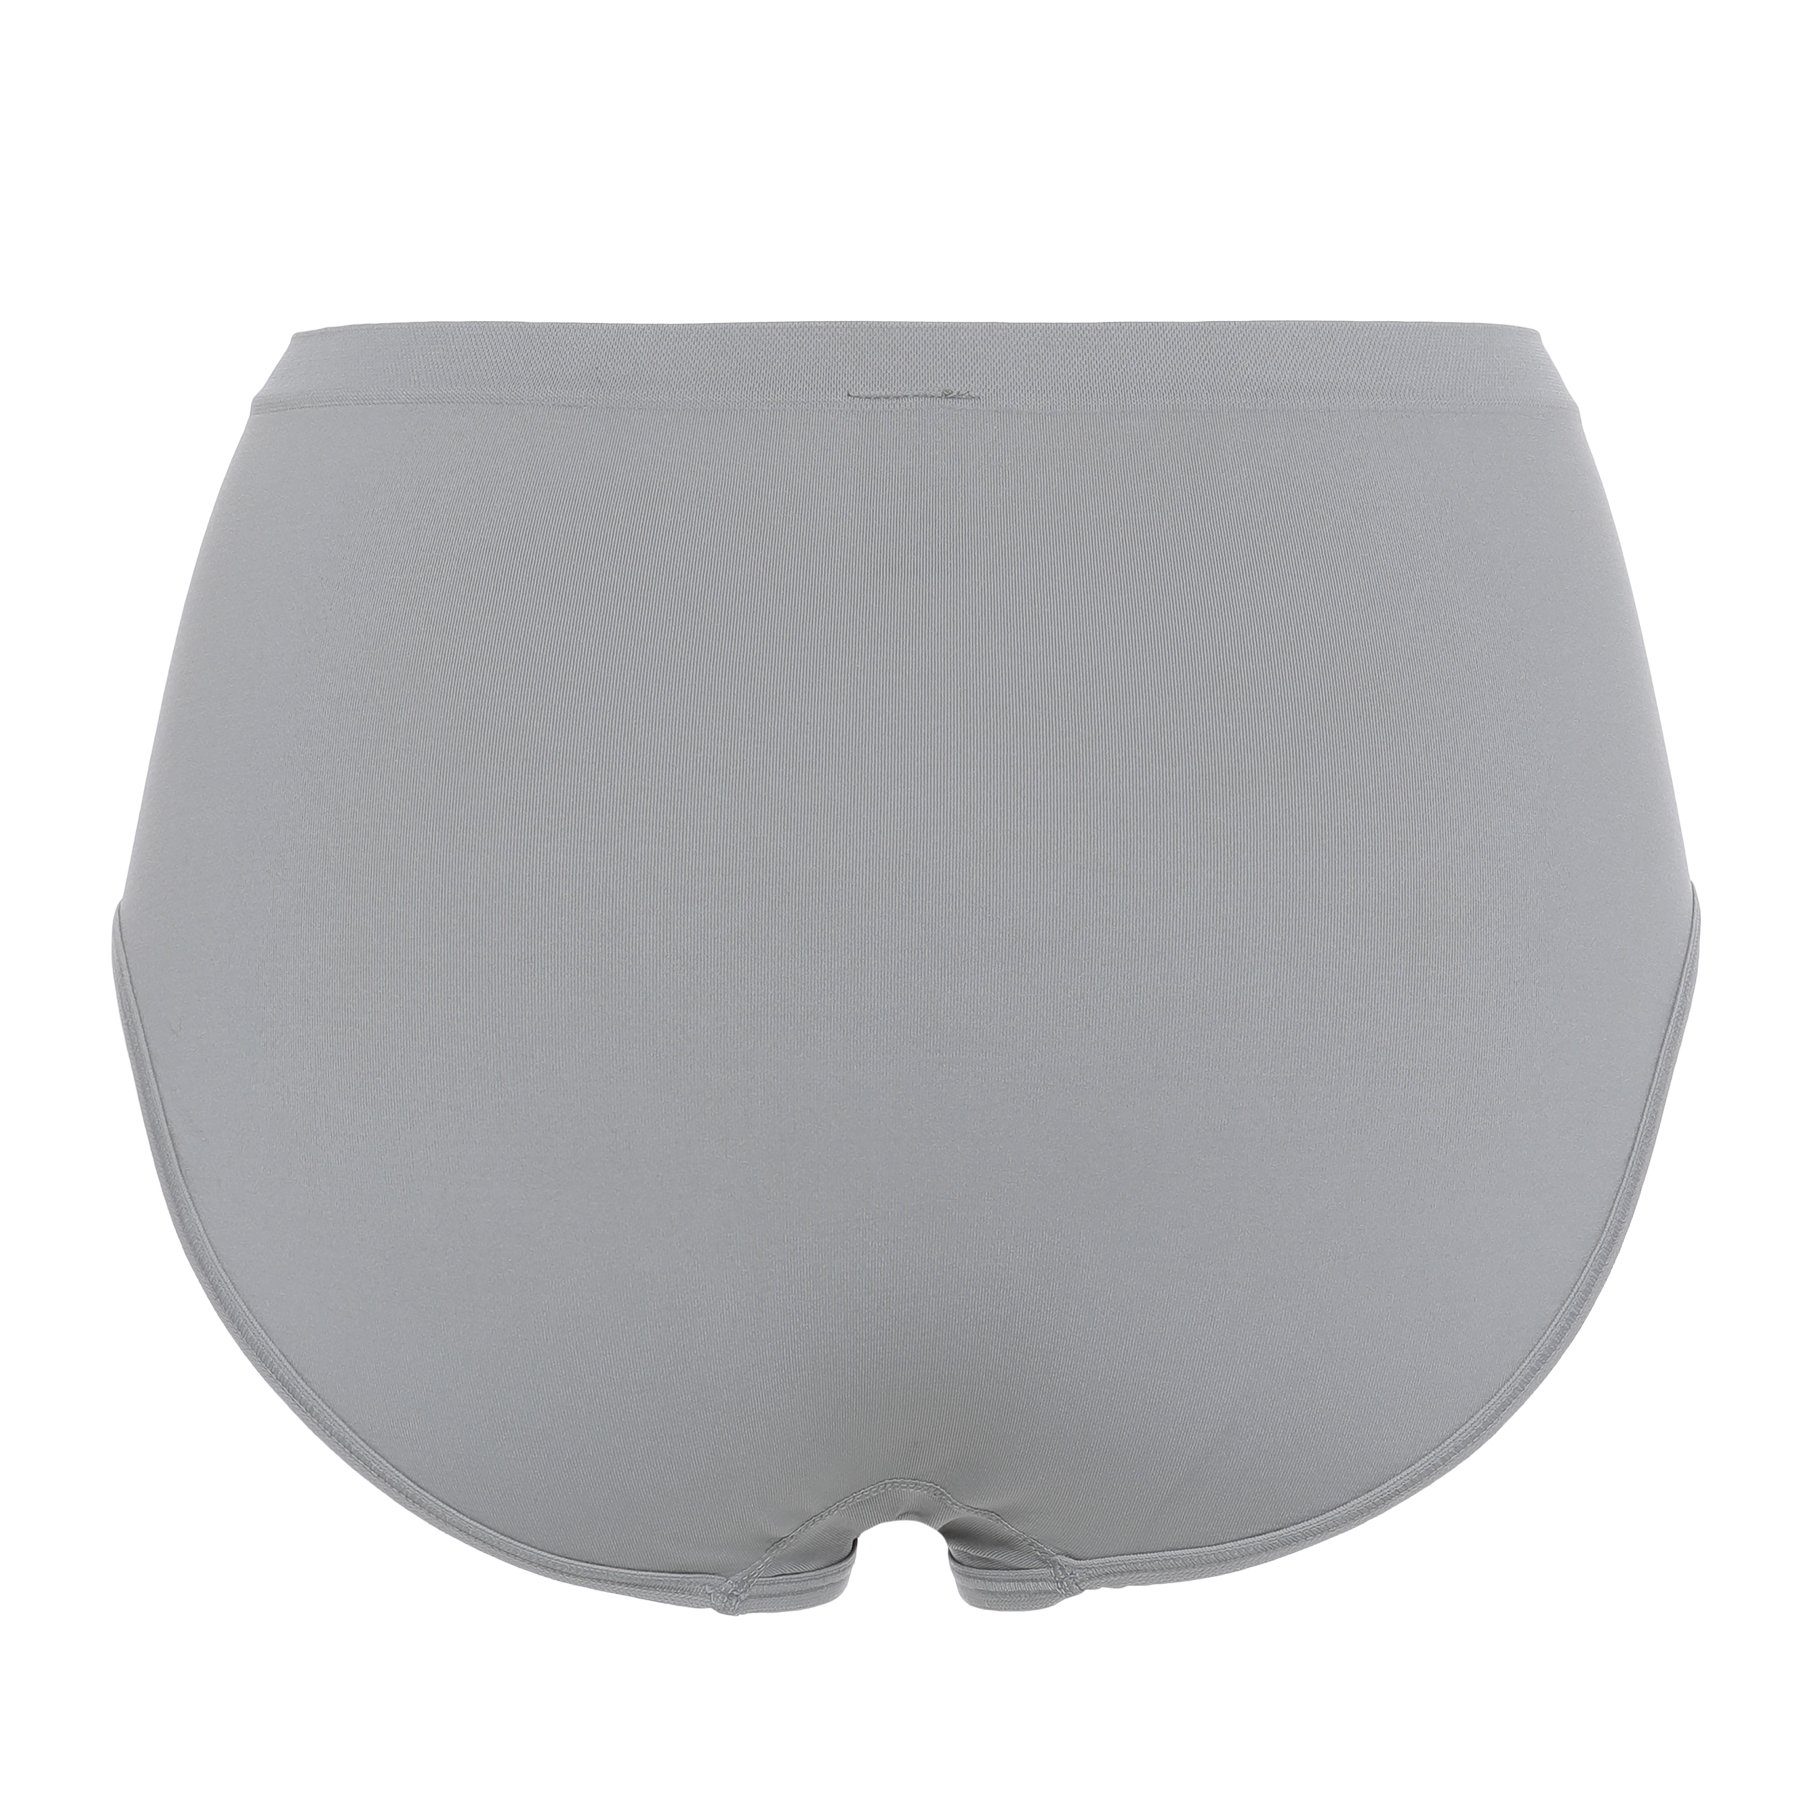 Panty Slip nahtloser mit Pure Verarbeitung elastisch silber-grau 2-teilig) Shape (2er-Set,